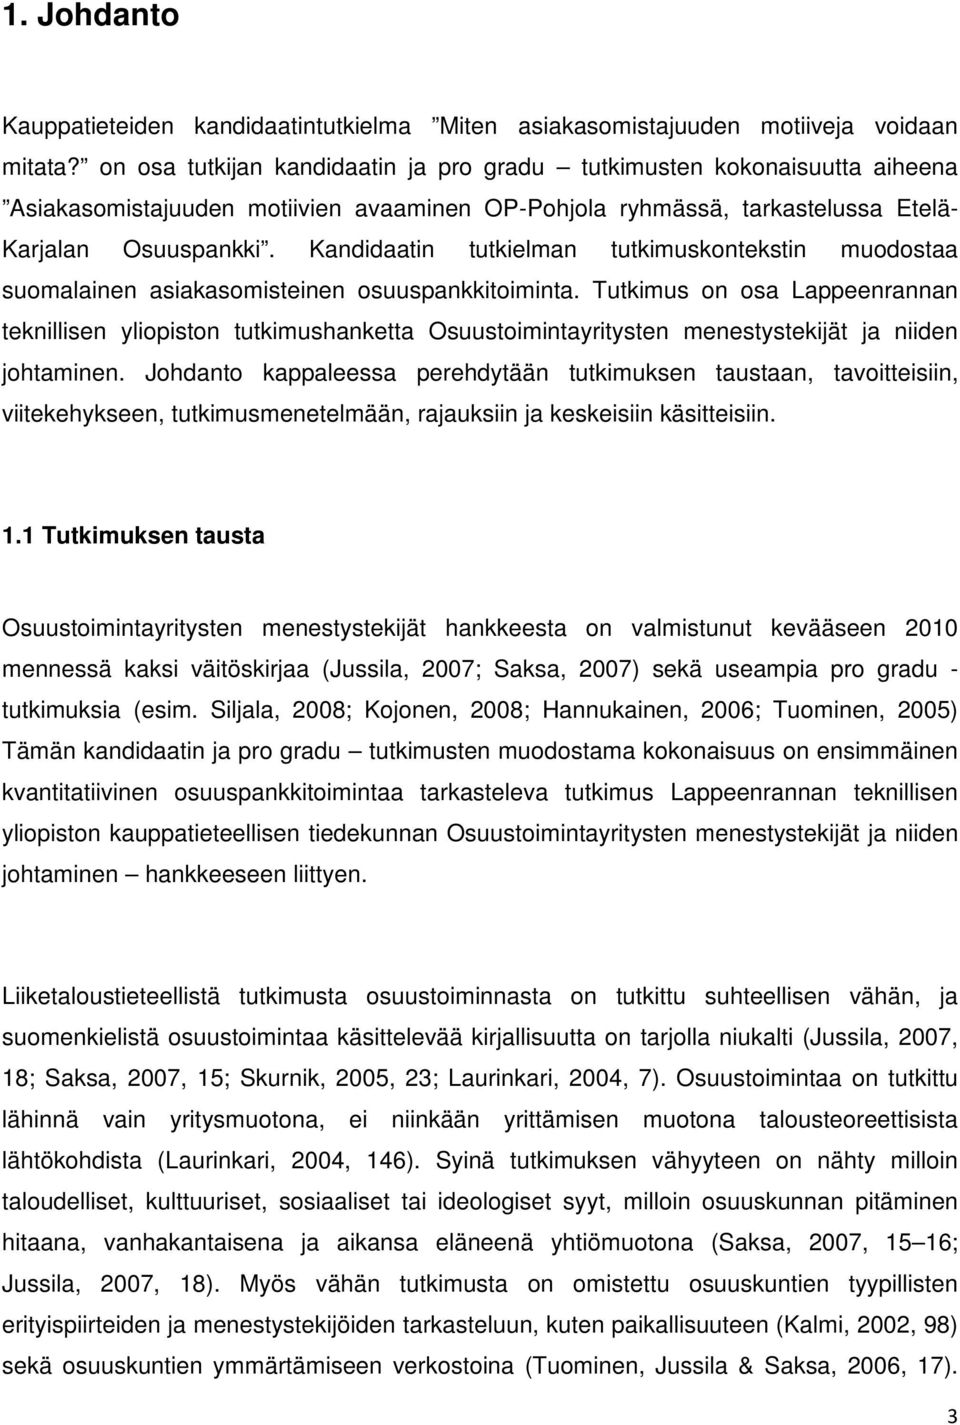 Kandidaatin tutkielman tutkimuskontekstin muodostaa suomalainen asiakasomisteinen osuuspankkitoiminta.